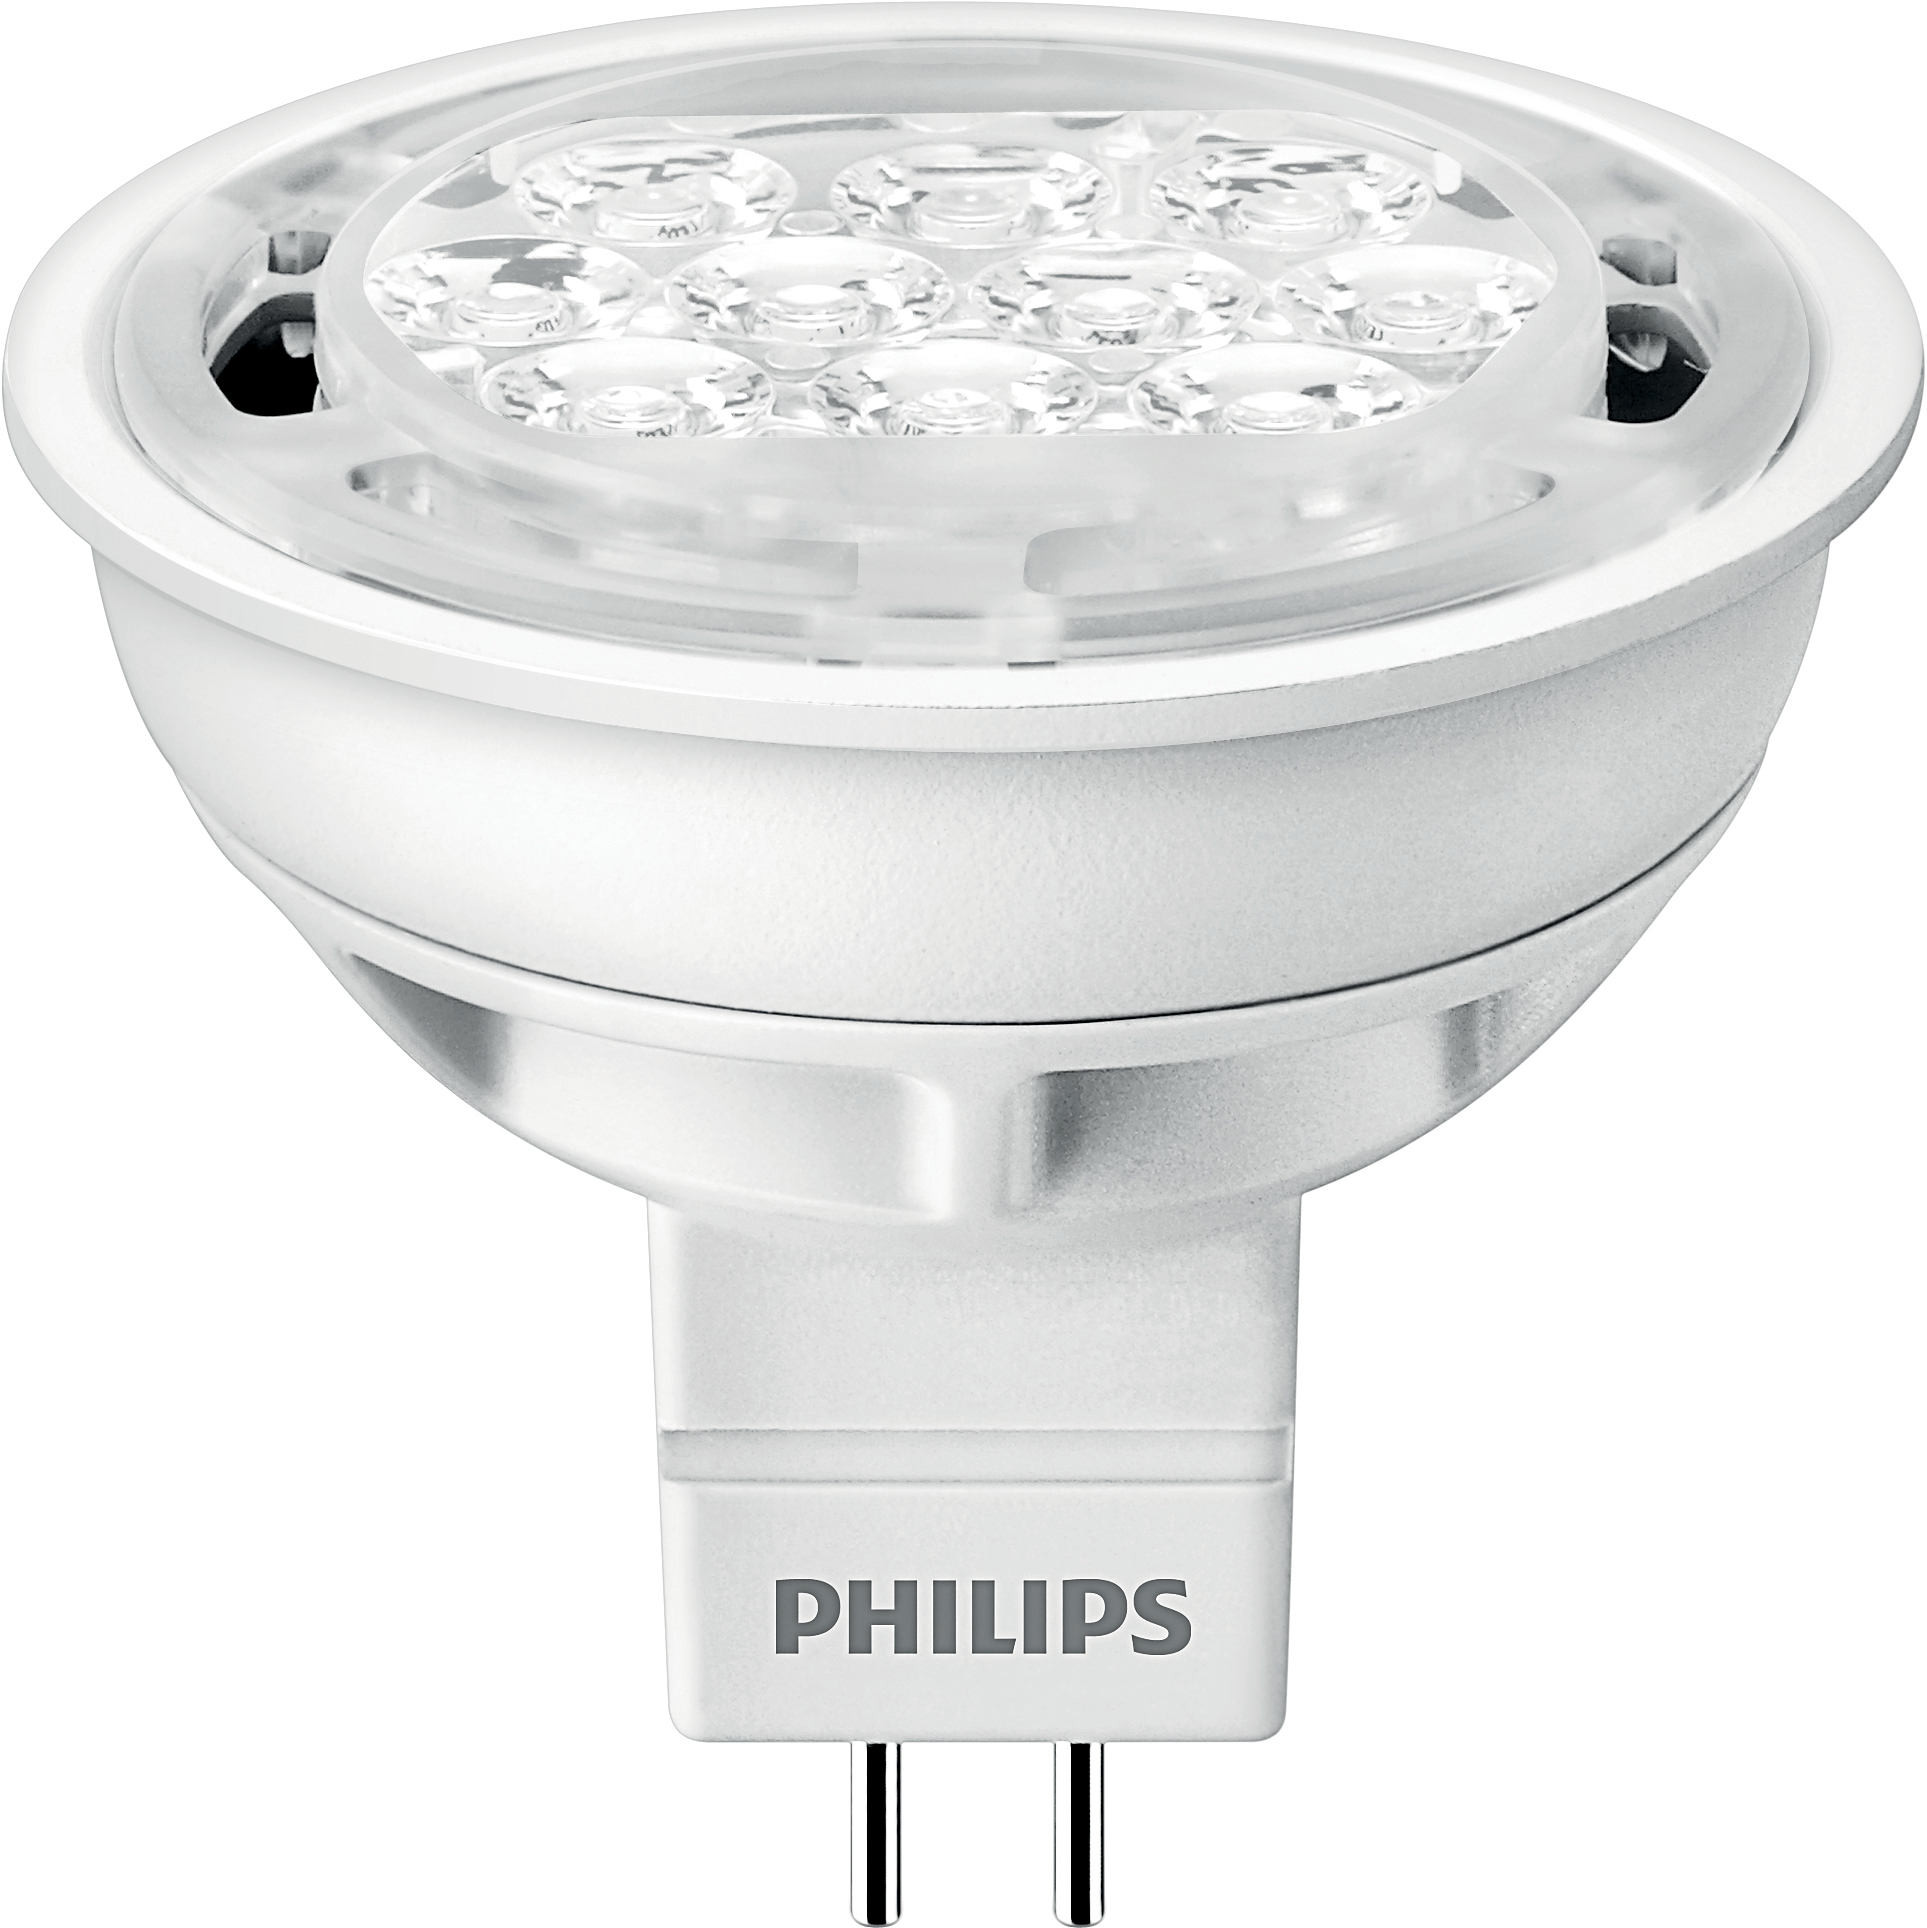 Филипс диодные. Светодиодная лампа Philips gu5.3 2700k 7w. Лампа светодиодная Philips Essential led 6500к, gu5.3, mr16, 4.5Вт. Philips Essential led gu 5. Лампа светодиодная Philips led 2700k, gu5.3, mr16, 5вт.